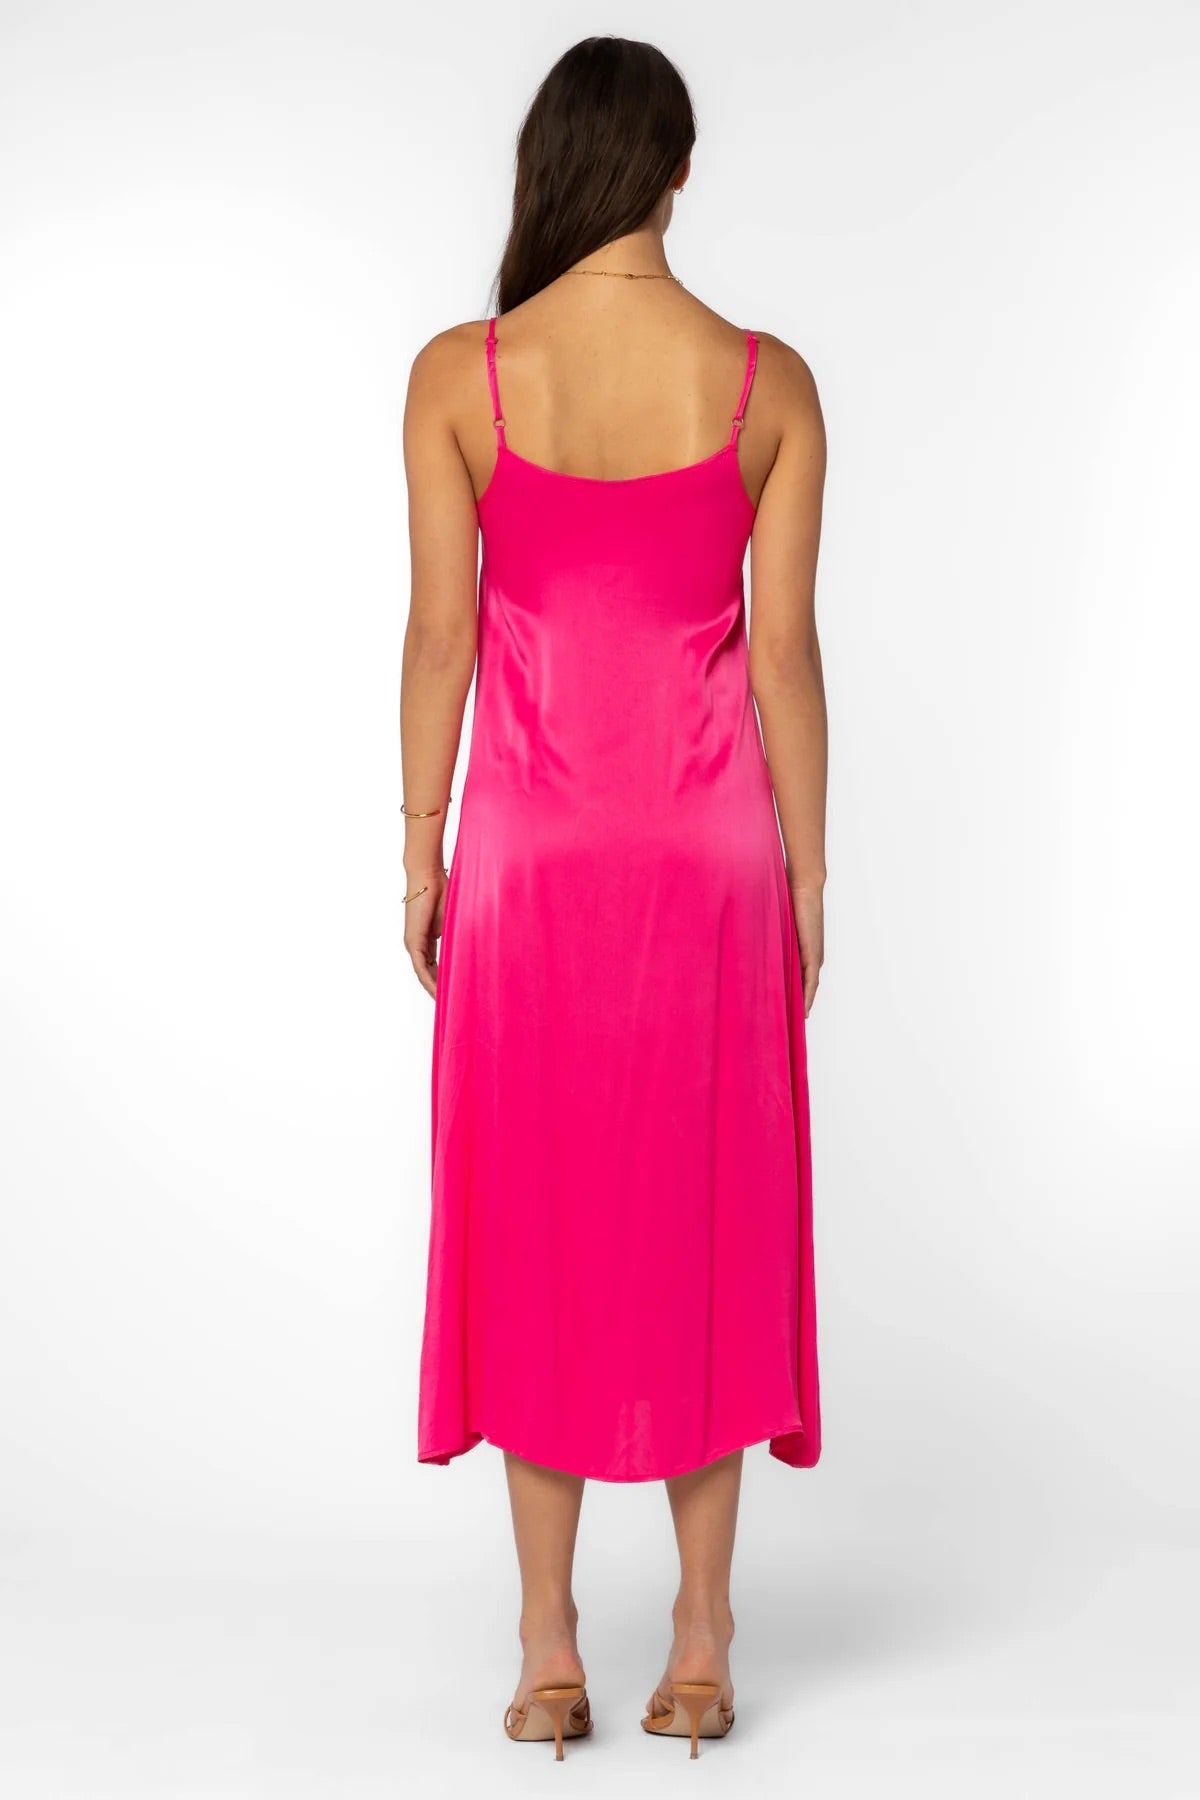 Velvet Heart Dreya Dress Hot Pink